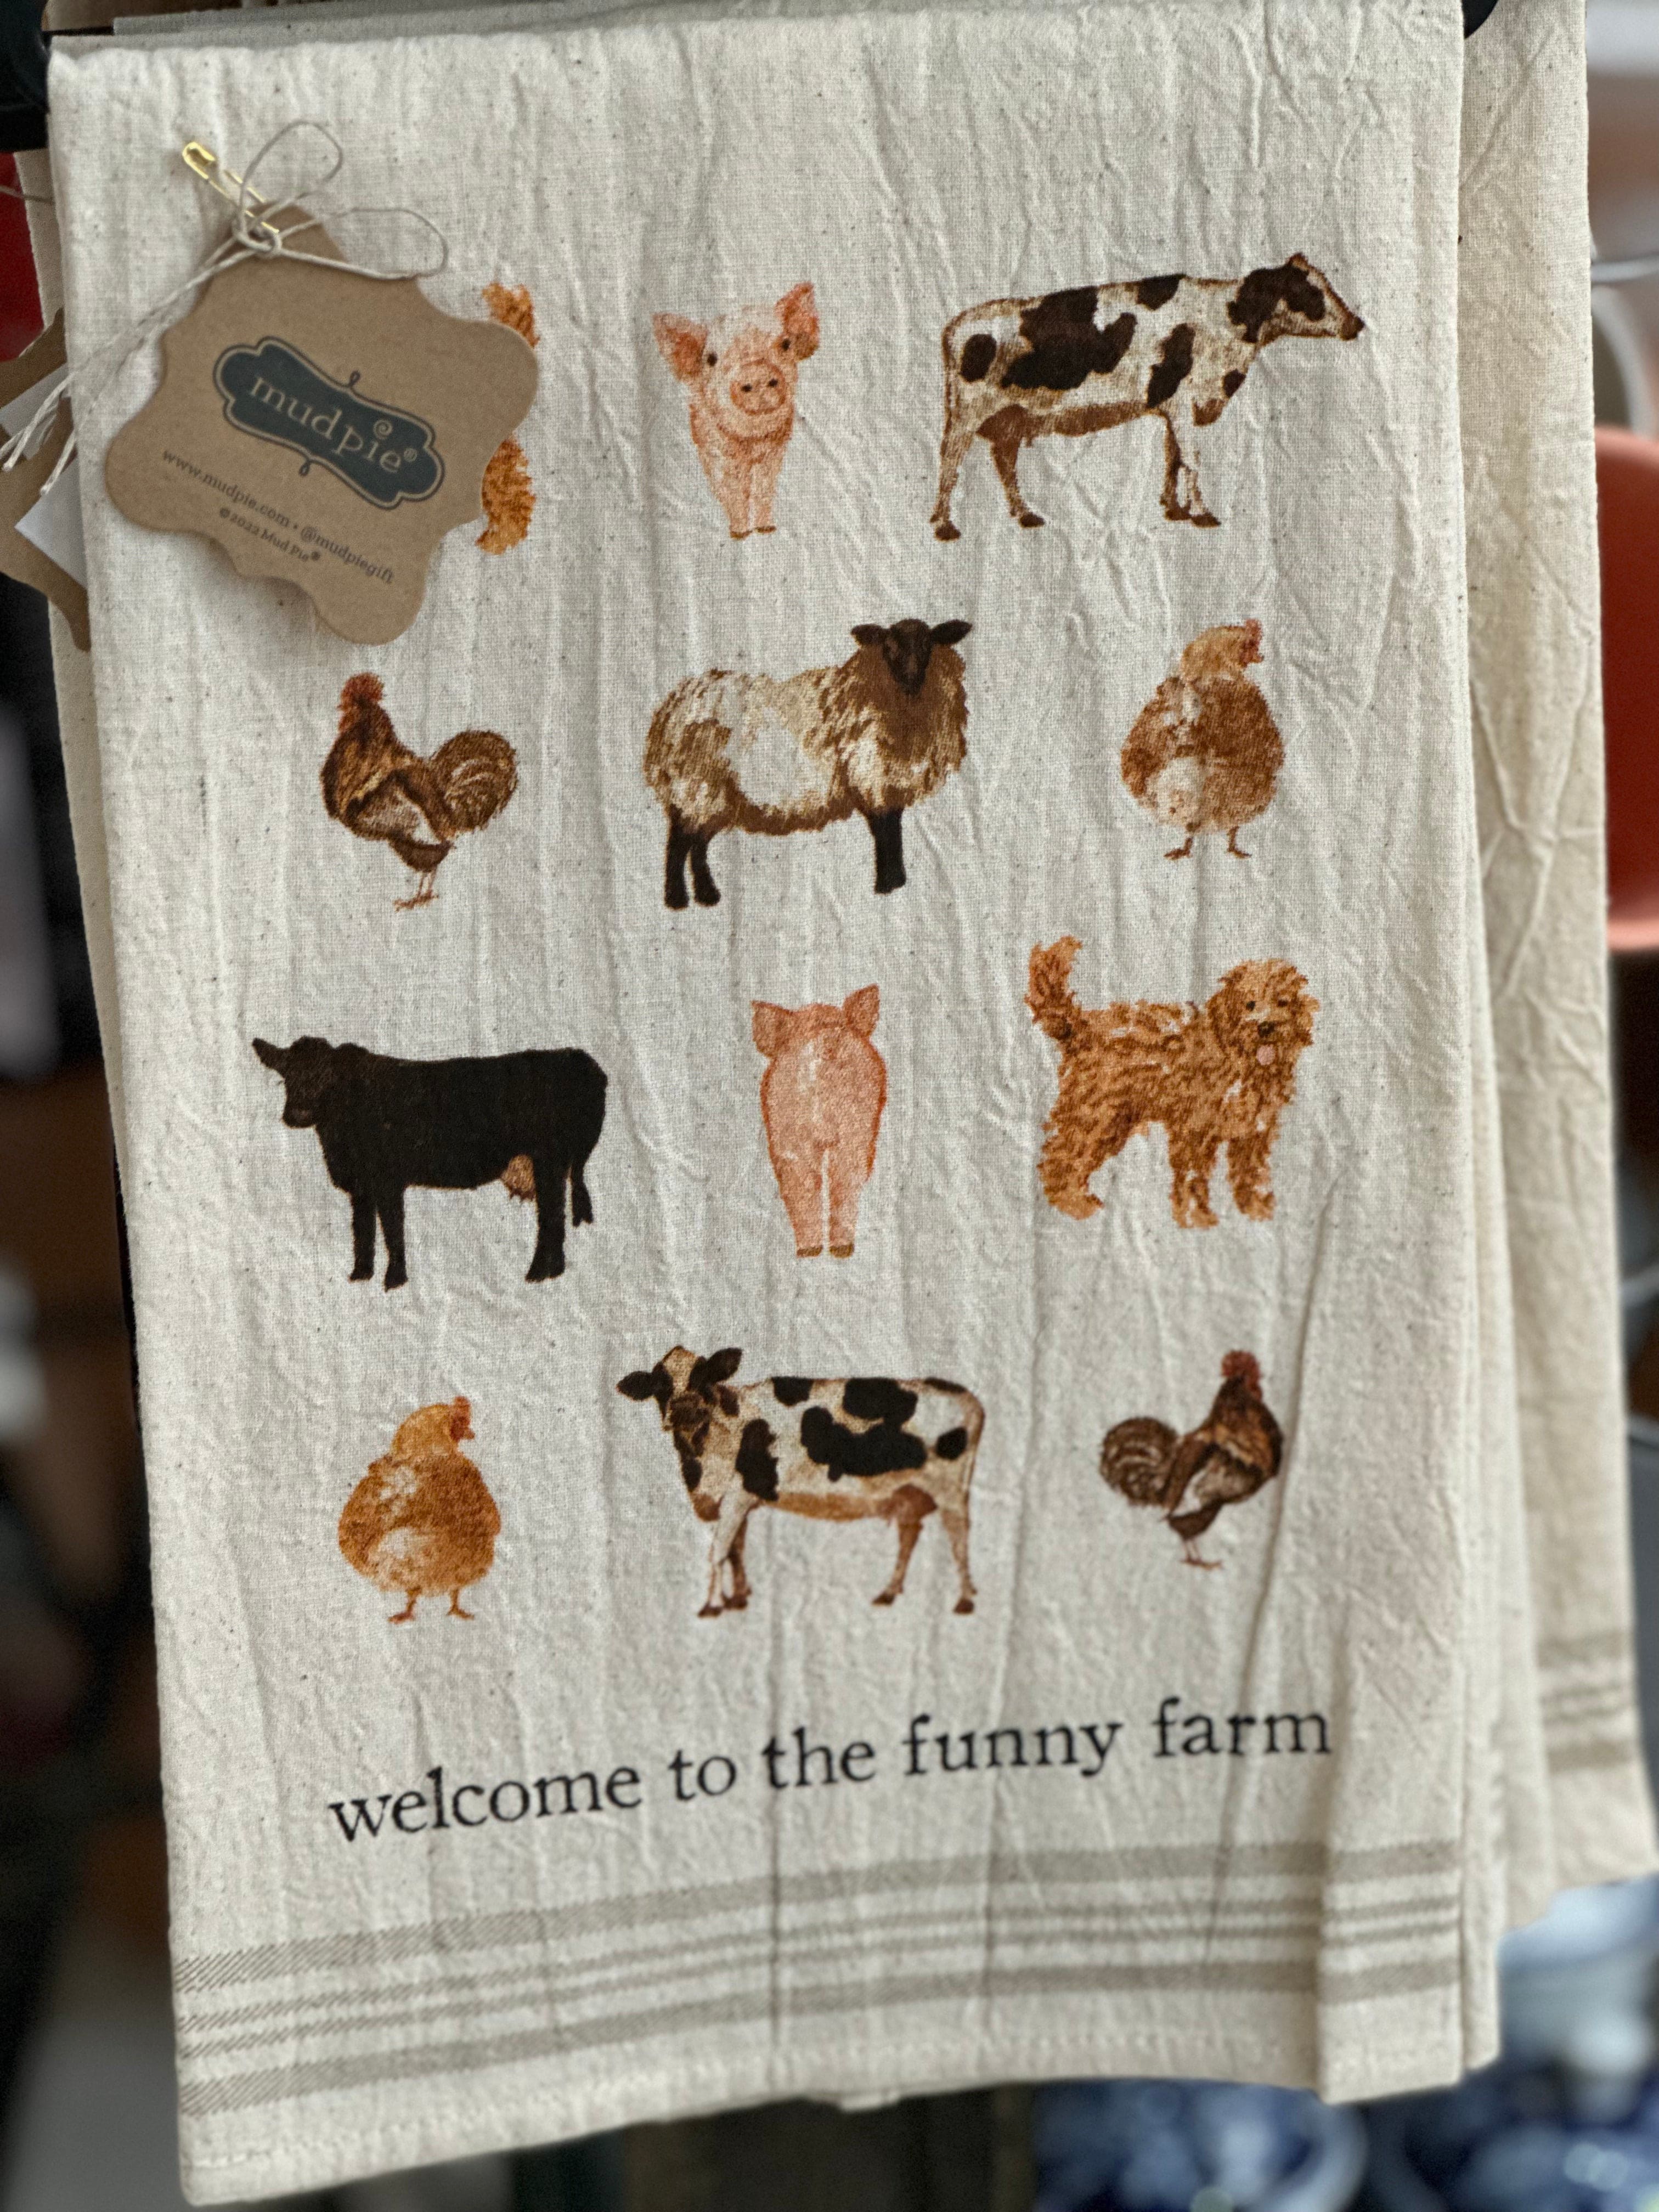 6 Pcs Farm Animal Theme Kitchen Towels Farmhouse Funny Dish Towel